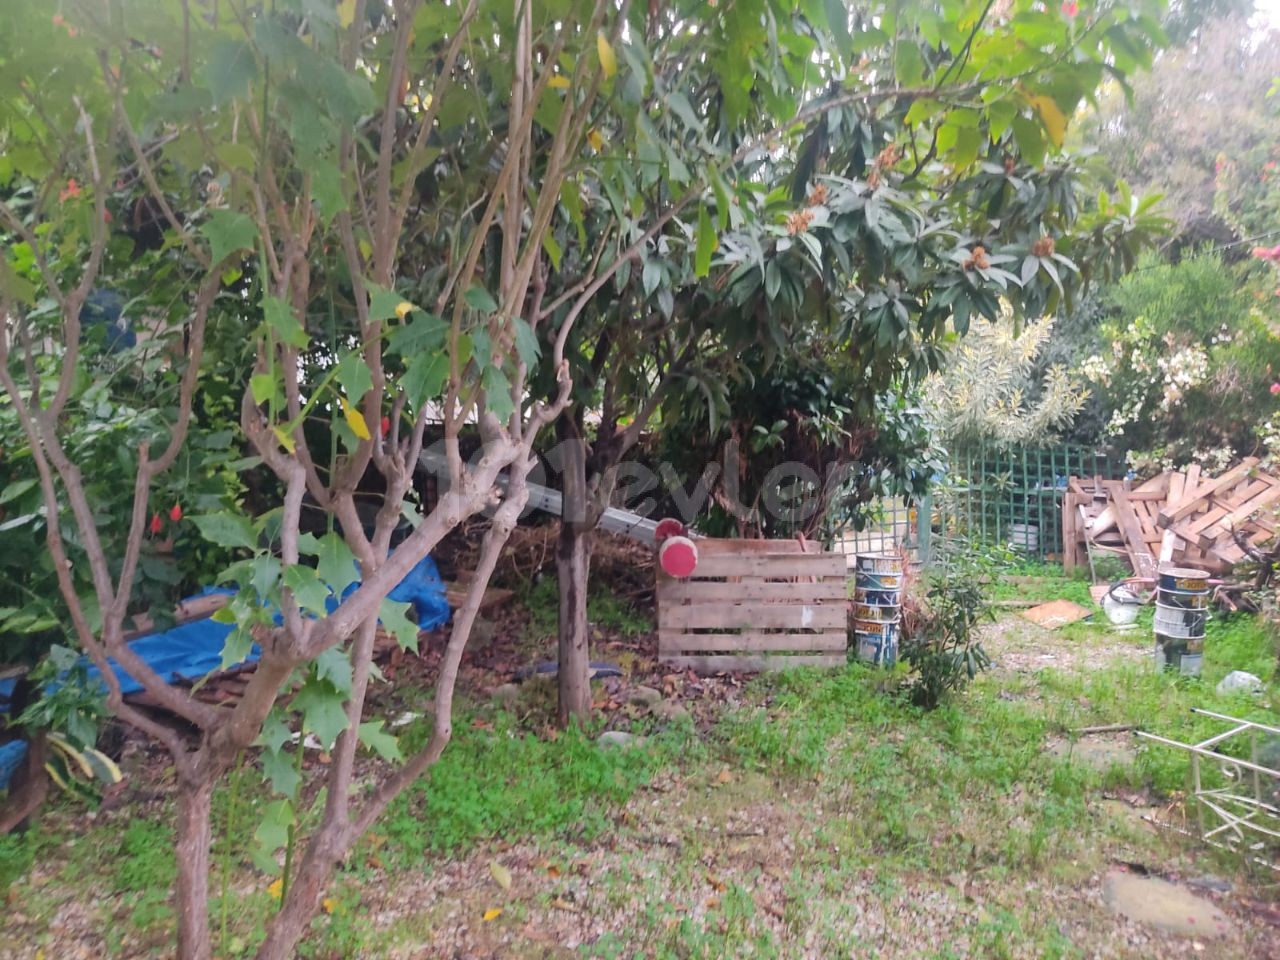 ویلا برای فروش در منطقه گیرنه - Karaoğlanoğlu با یک باغ بزرگ (در 2 هکتار زمین)